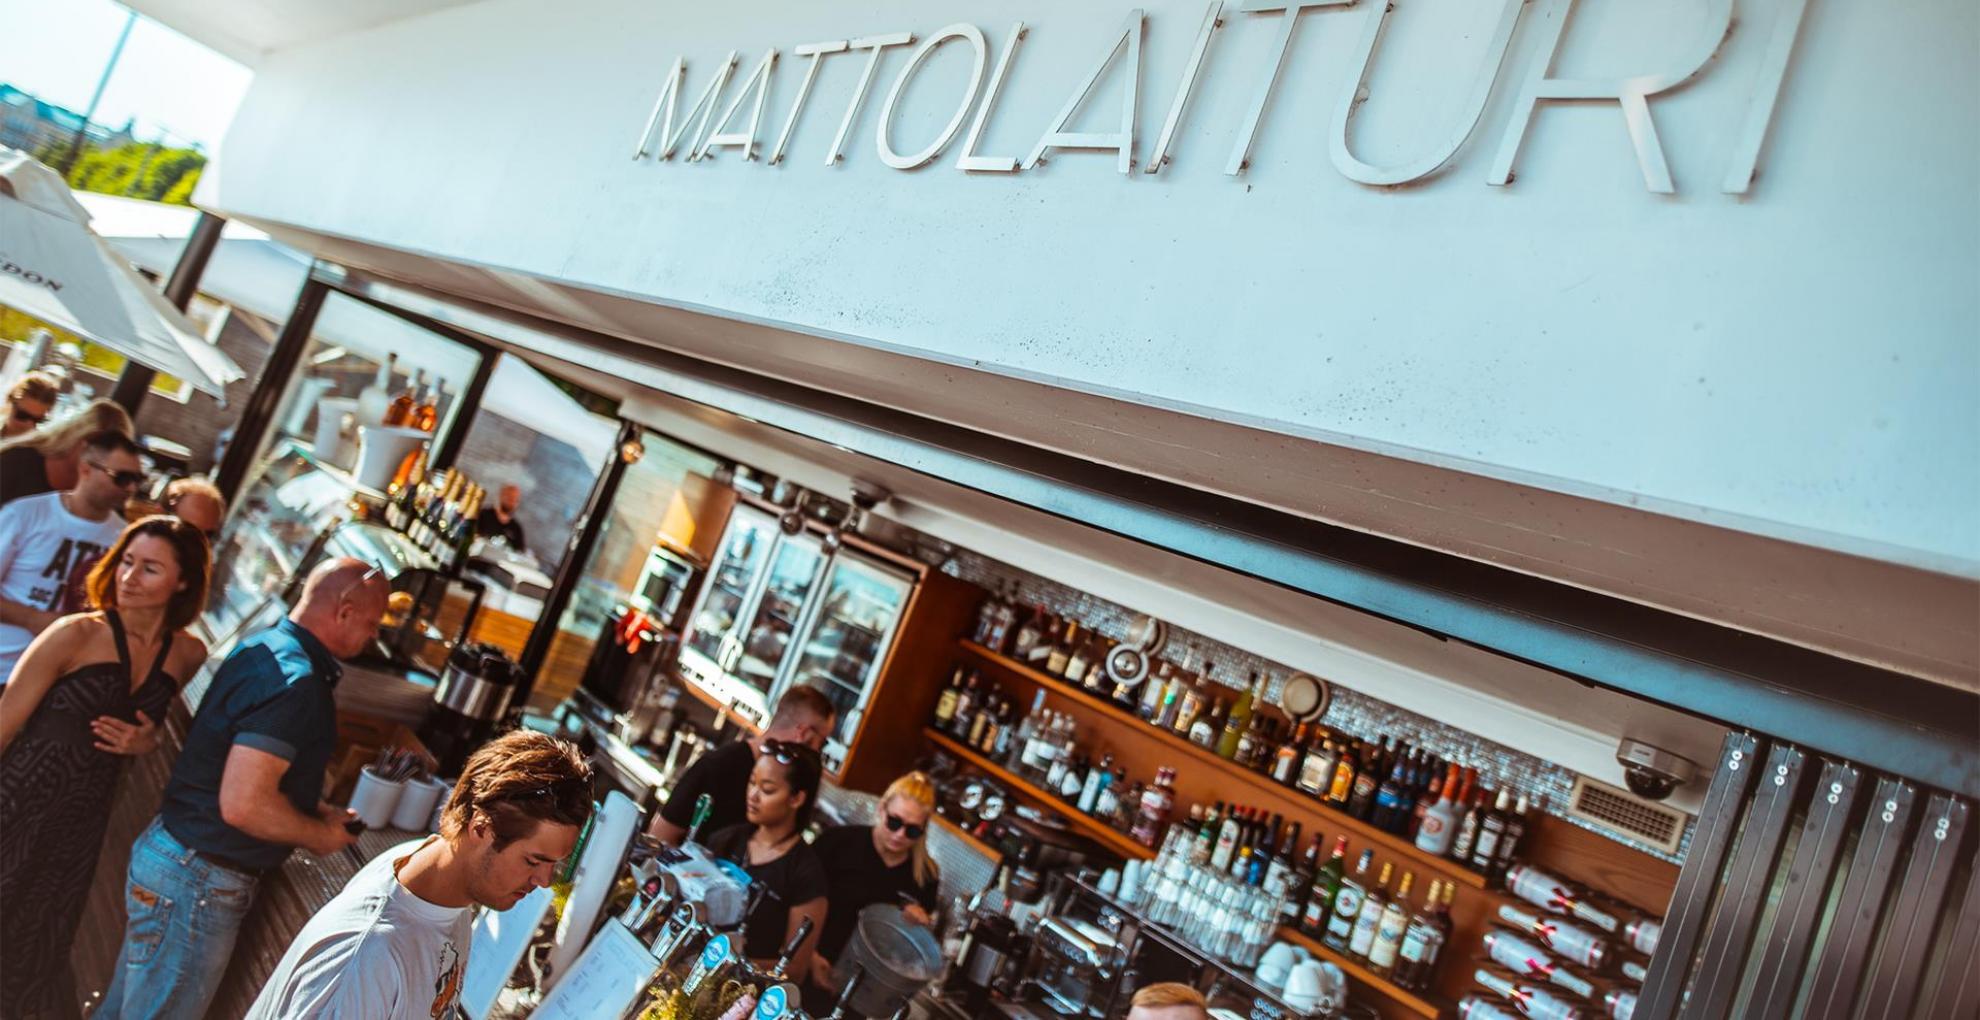 Picture of service point: Mattolaituri